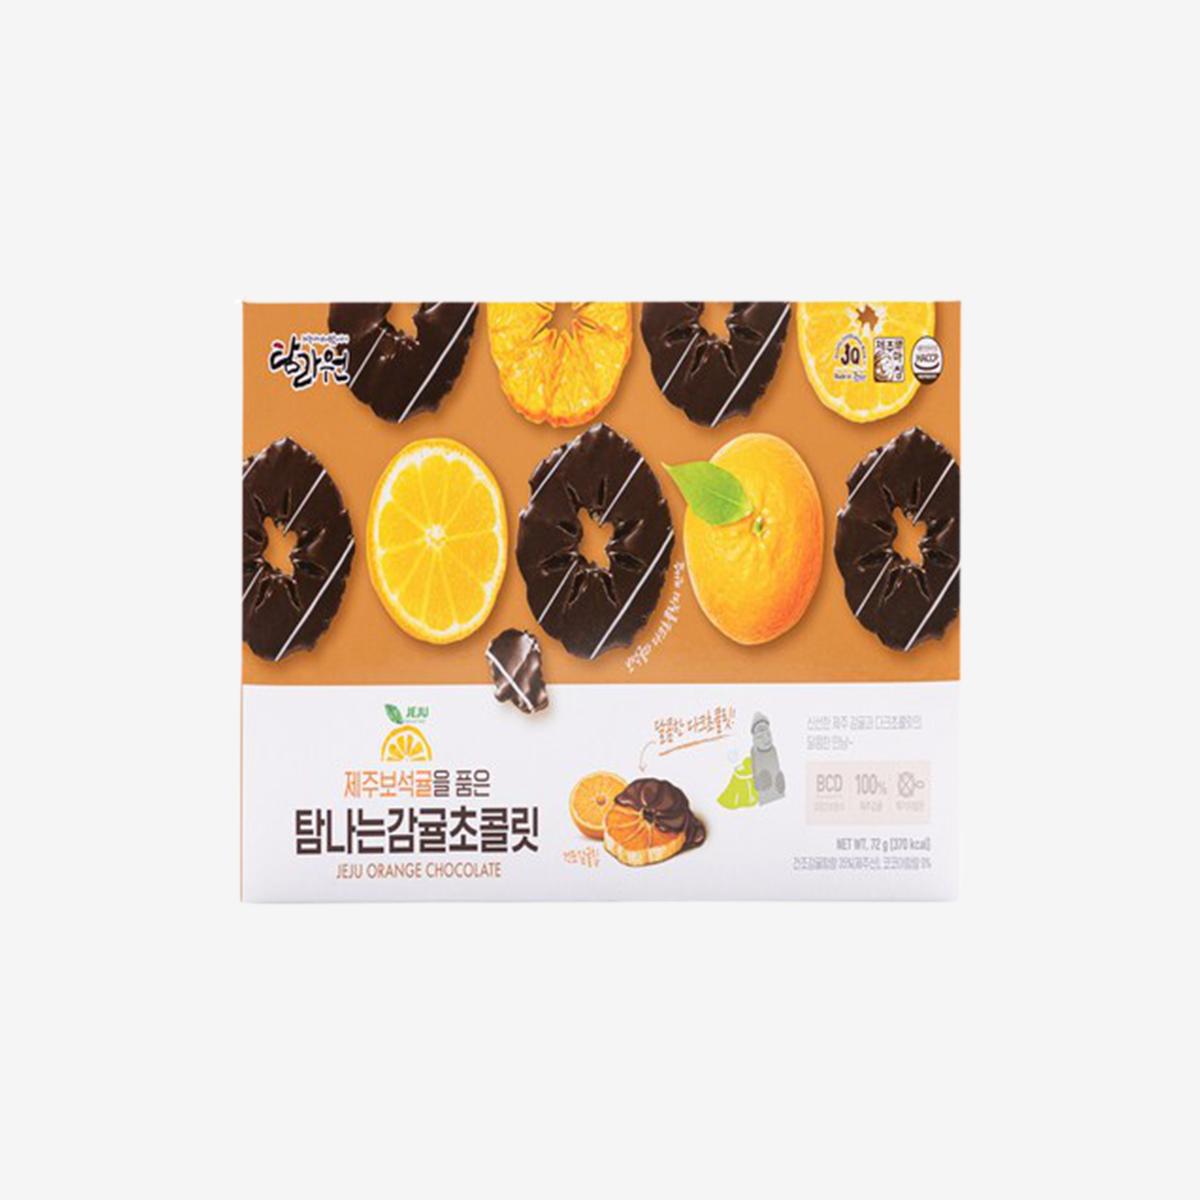 Jeju Orange Chocolate (12 packs)